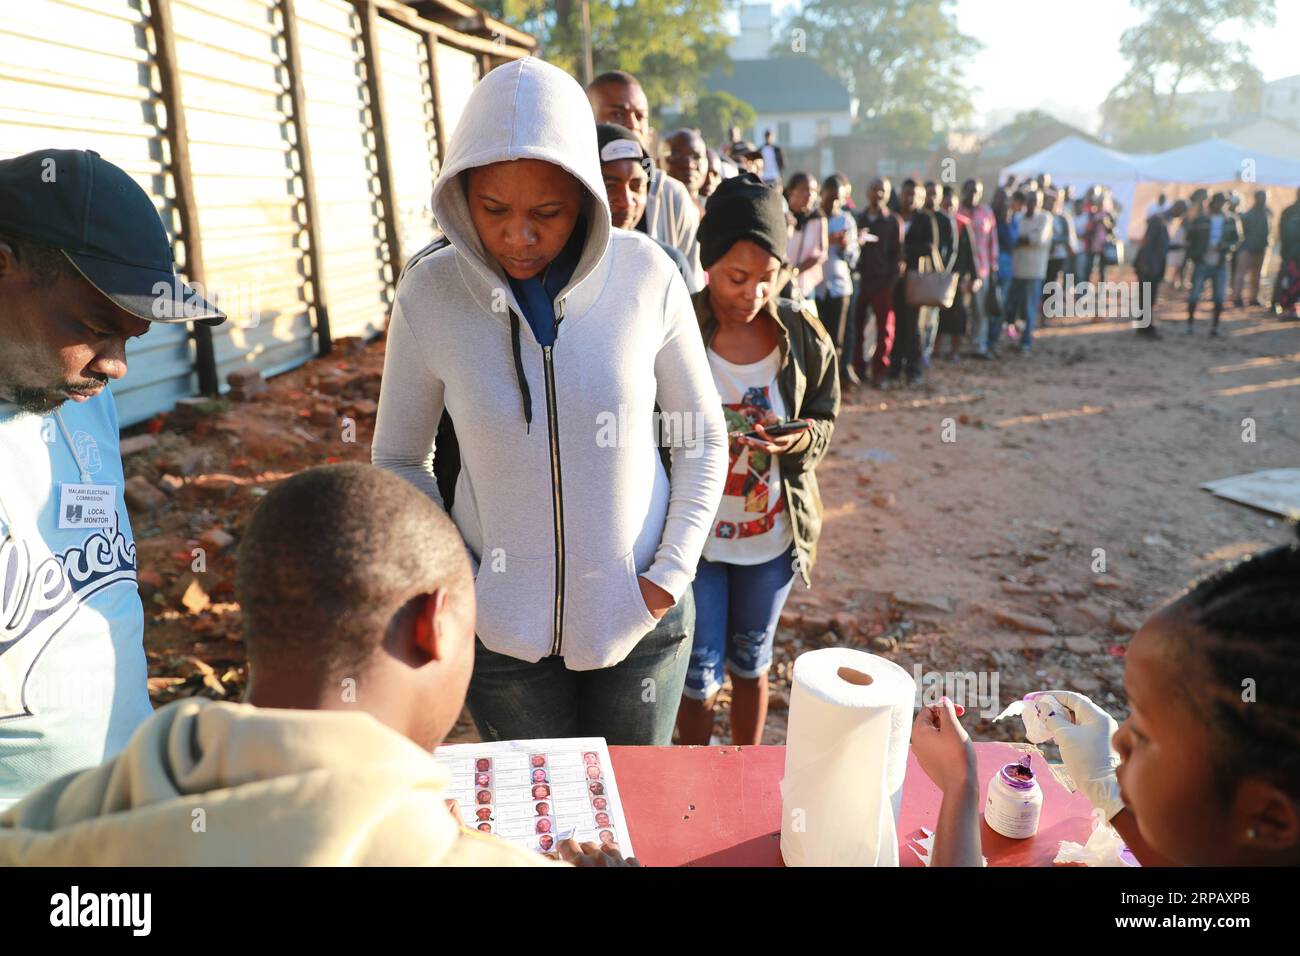 190521 -- BLANTYRE, 21. Mai 2019 Xinhua -- Wähler warteten, um ihre Identität in einer Wahlstation in Blantyre, Malawi, am 21. Mai 2019 überprüfen zu lassen. Die Malawier im ganzen Land warteten sich am Dienstag in die Warteschlange, um Stimmzettel abzugeben, die bestimmen werden, welche Partei das Land in den nächsten fünf Jahren regieren soll. Xinhua/Peng Lijun MALAWI-BLANTYRE-ELECTION-VOTE PUBLICATIONxNOTxINxCHN Stockfoto